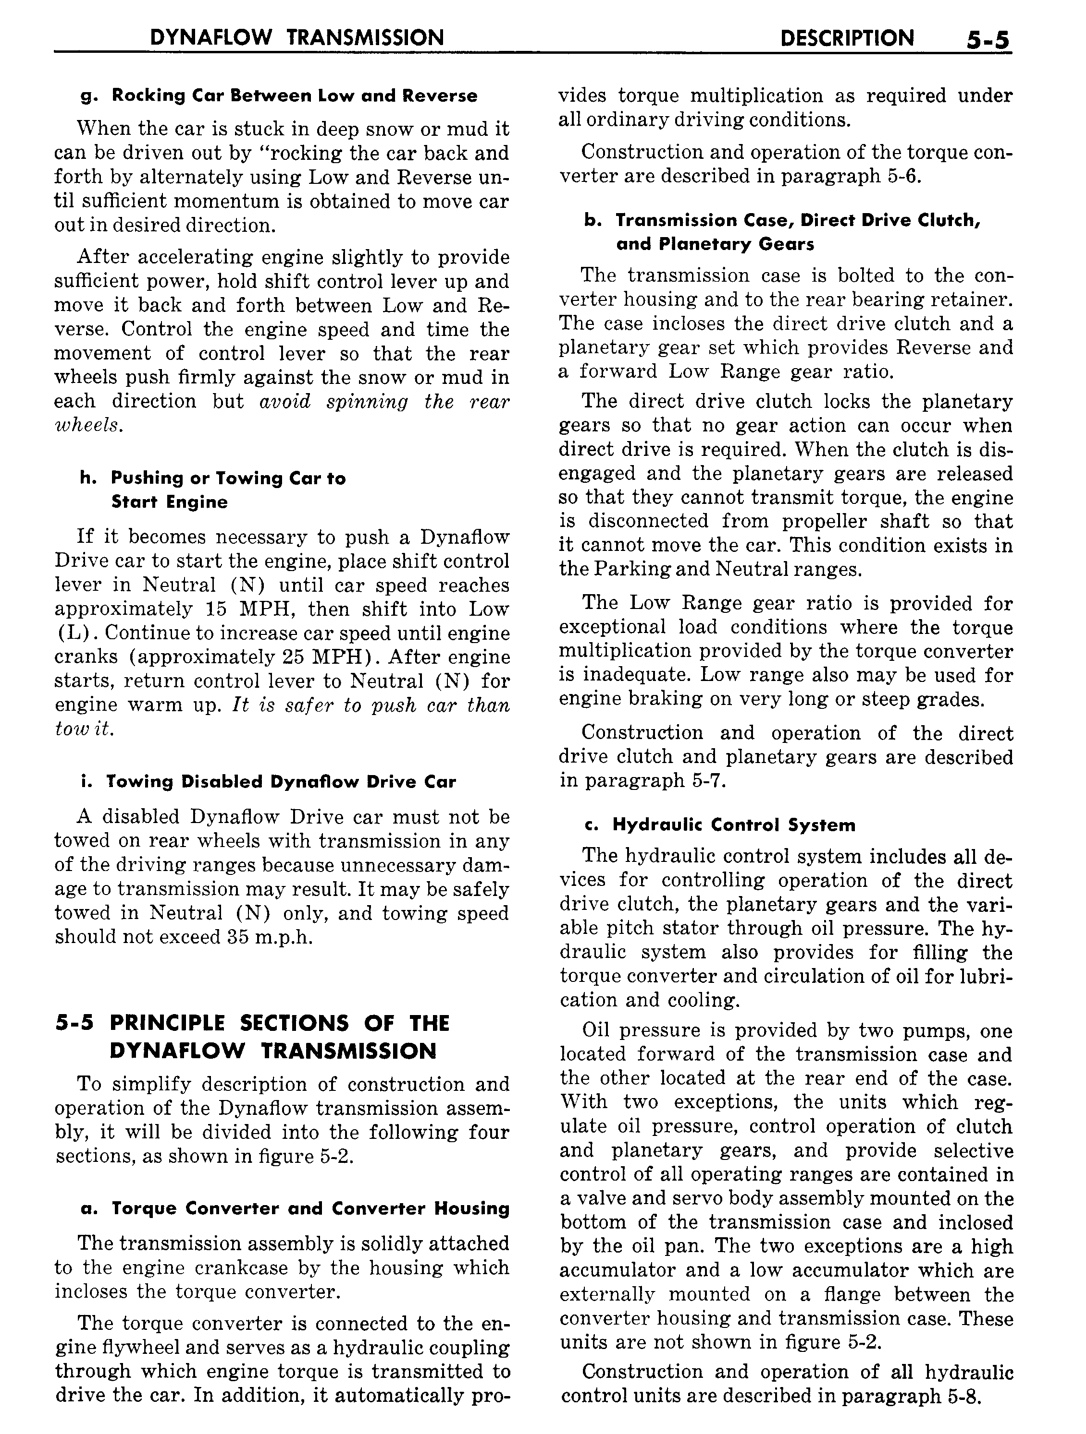 n_06 1957 Buick Shop Manual - Dynaflow-005-005.jpg